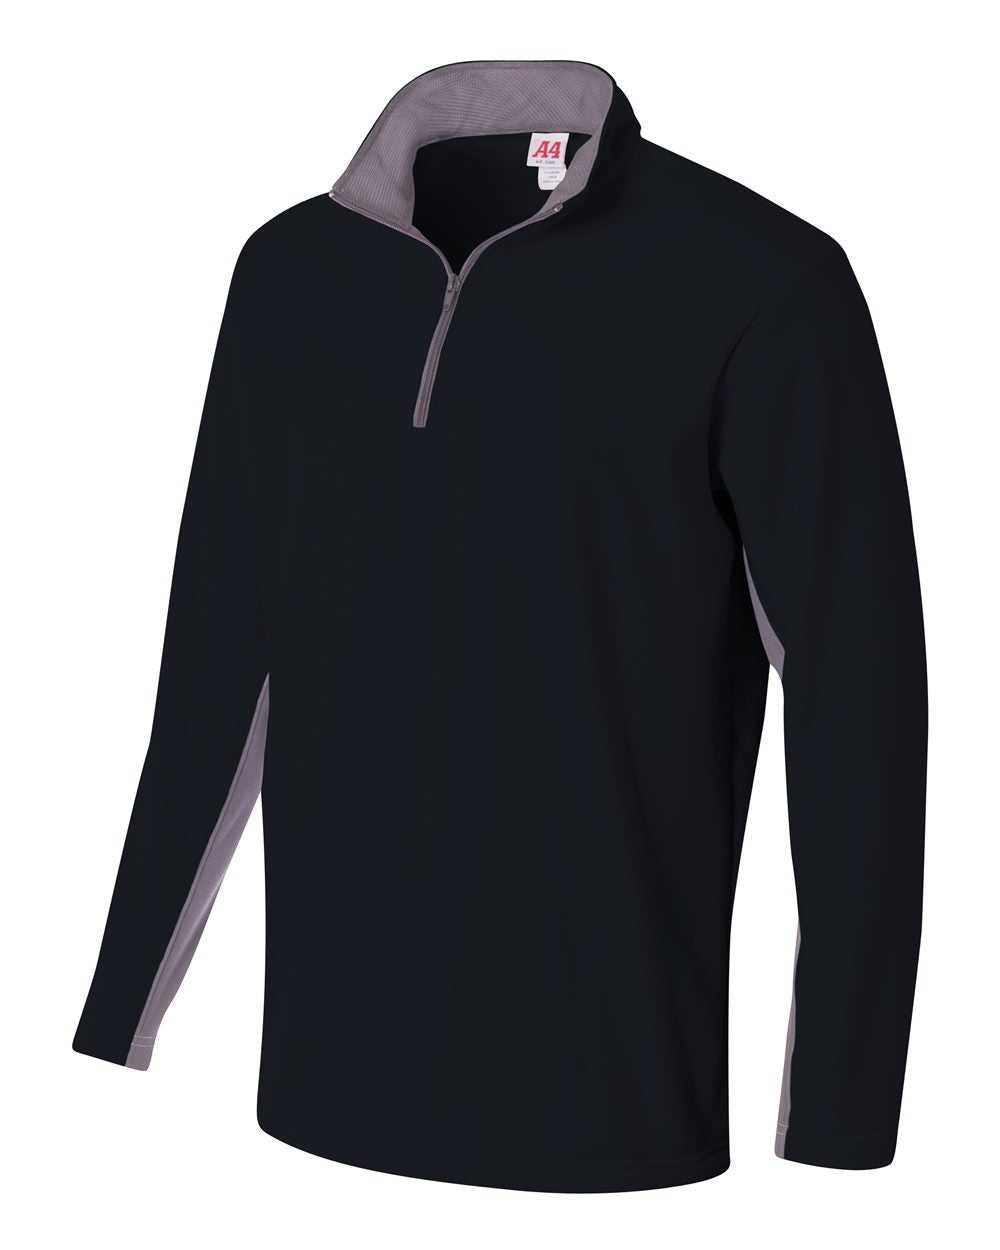 A4 N4246 1/4 Zip Color Block Fleece Jacket - Black Graphite - HIT a Double